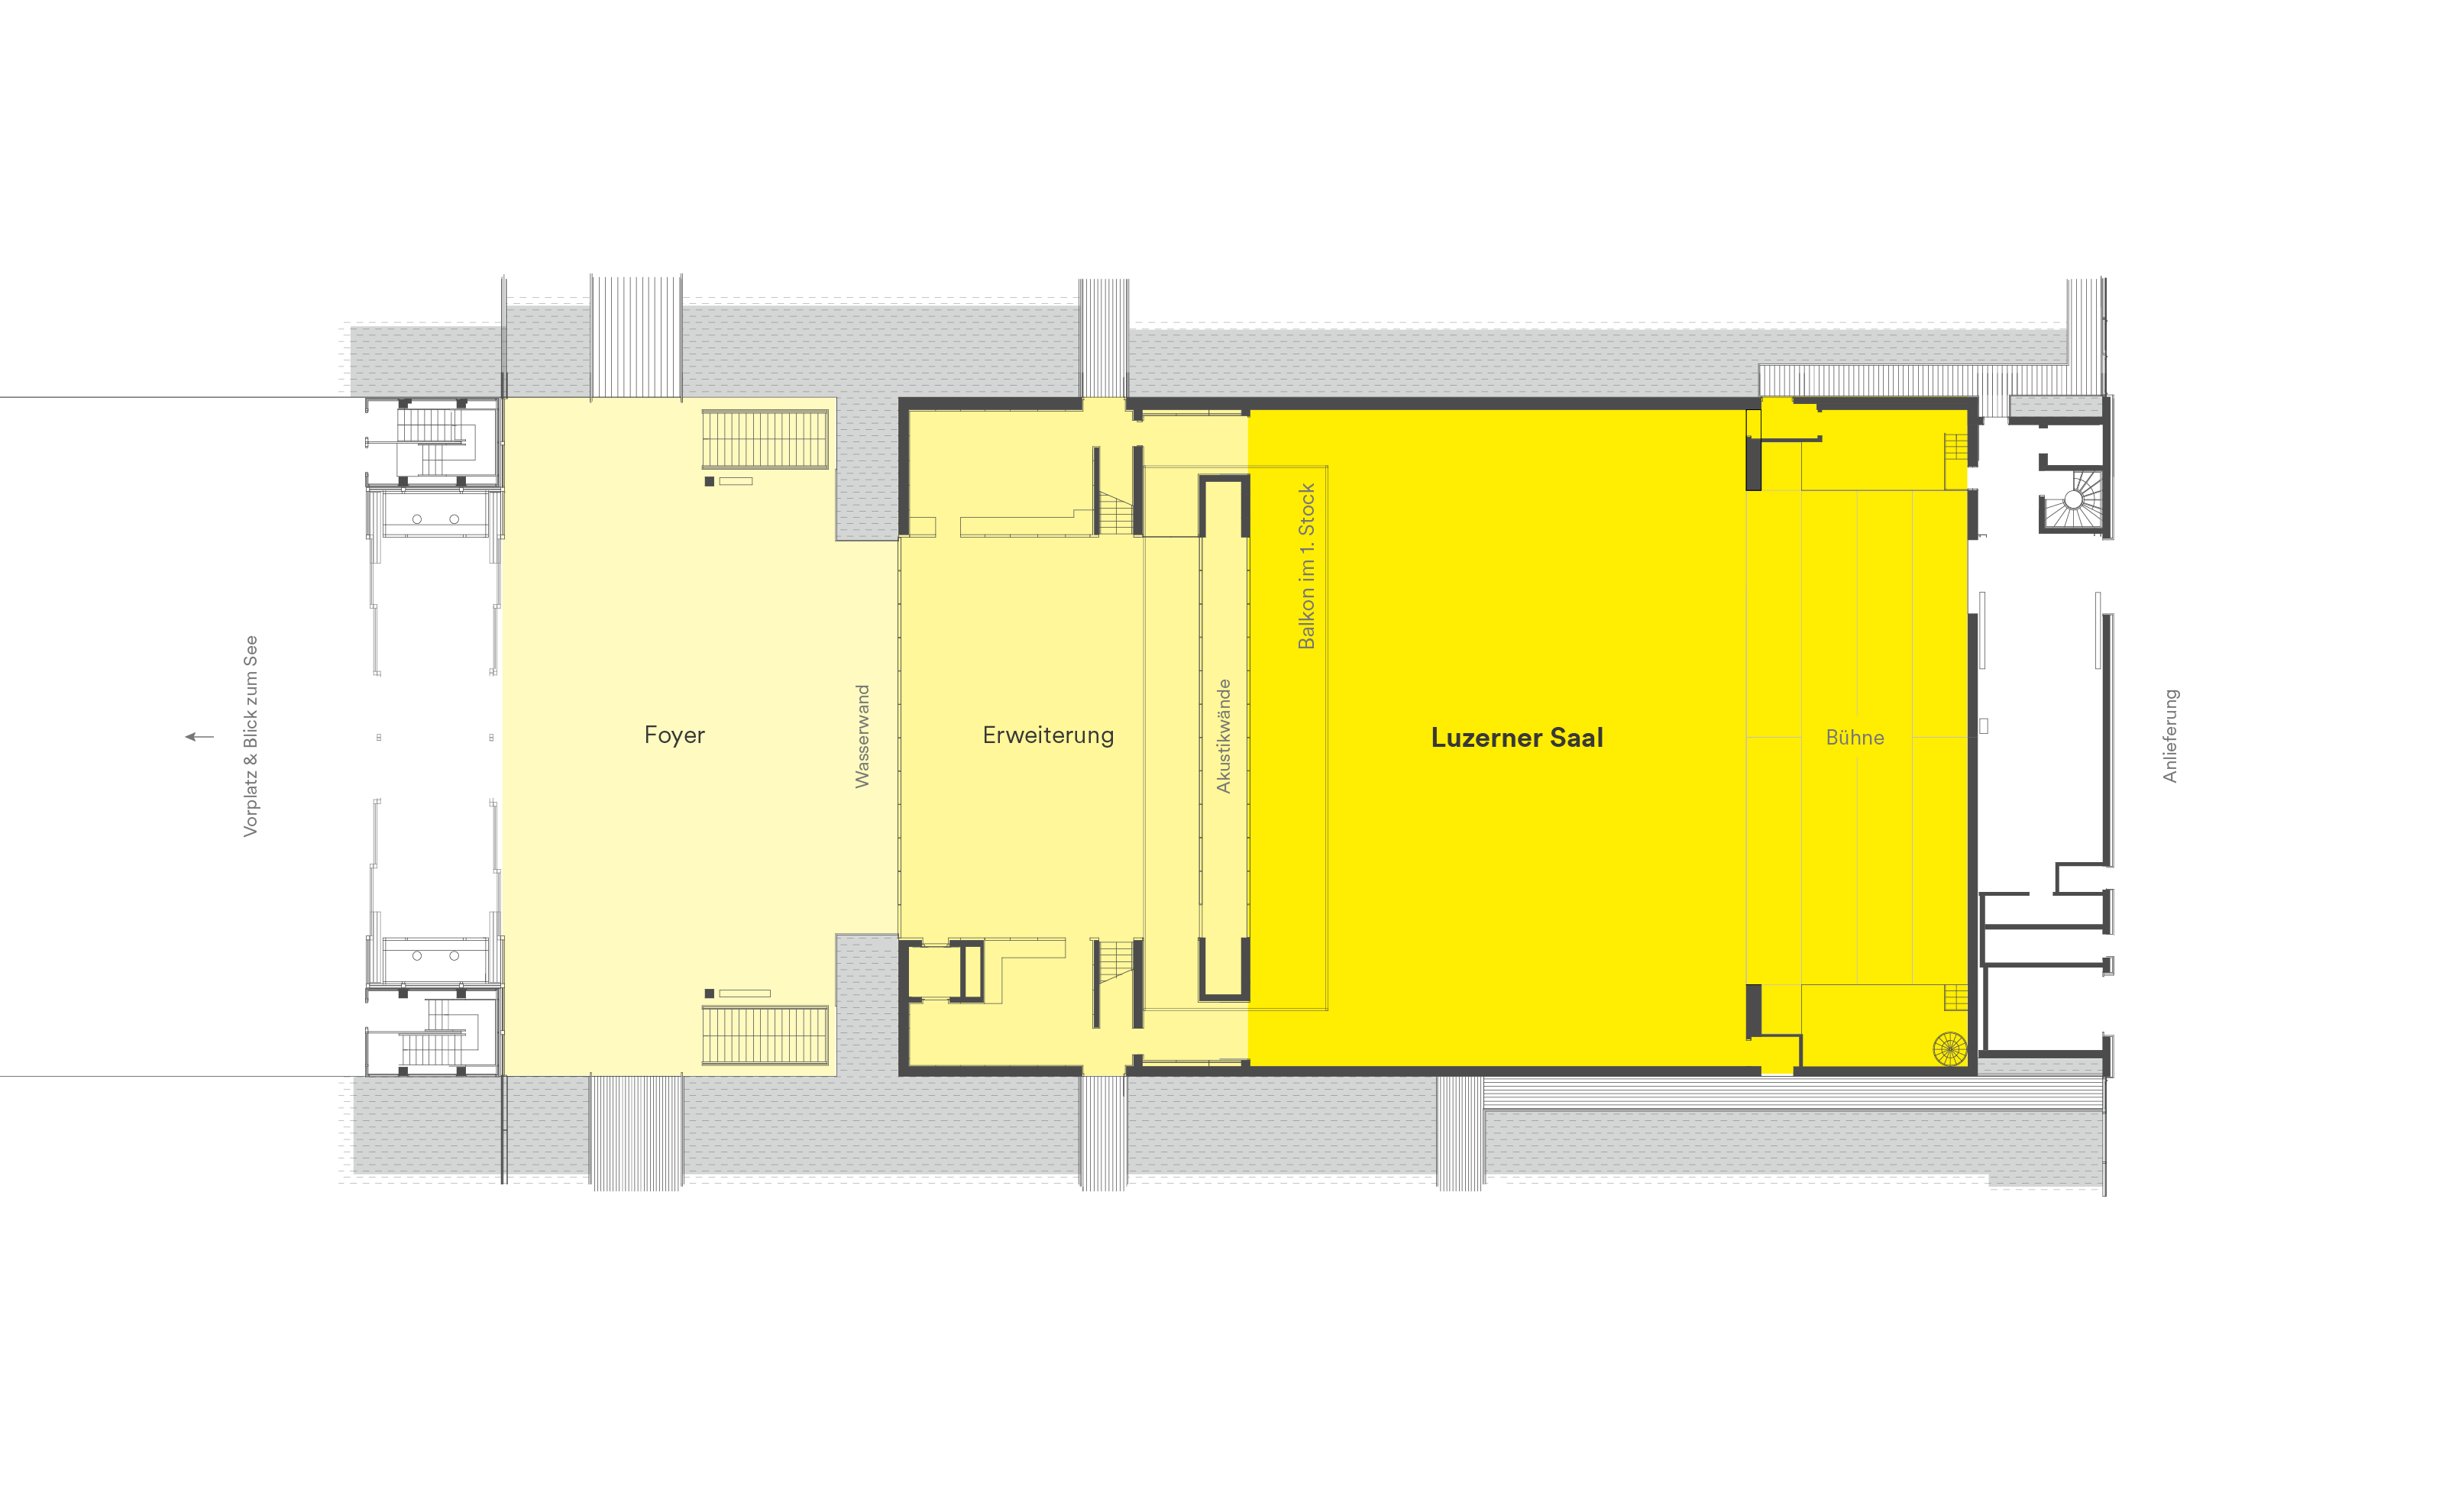 Grundriss Luzerner Saal mit Erweiterung und Foyer im KKL Luzern